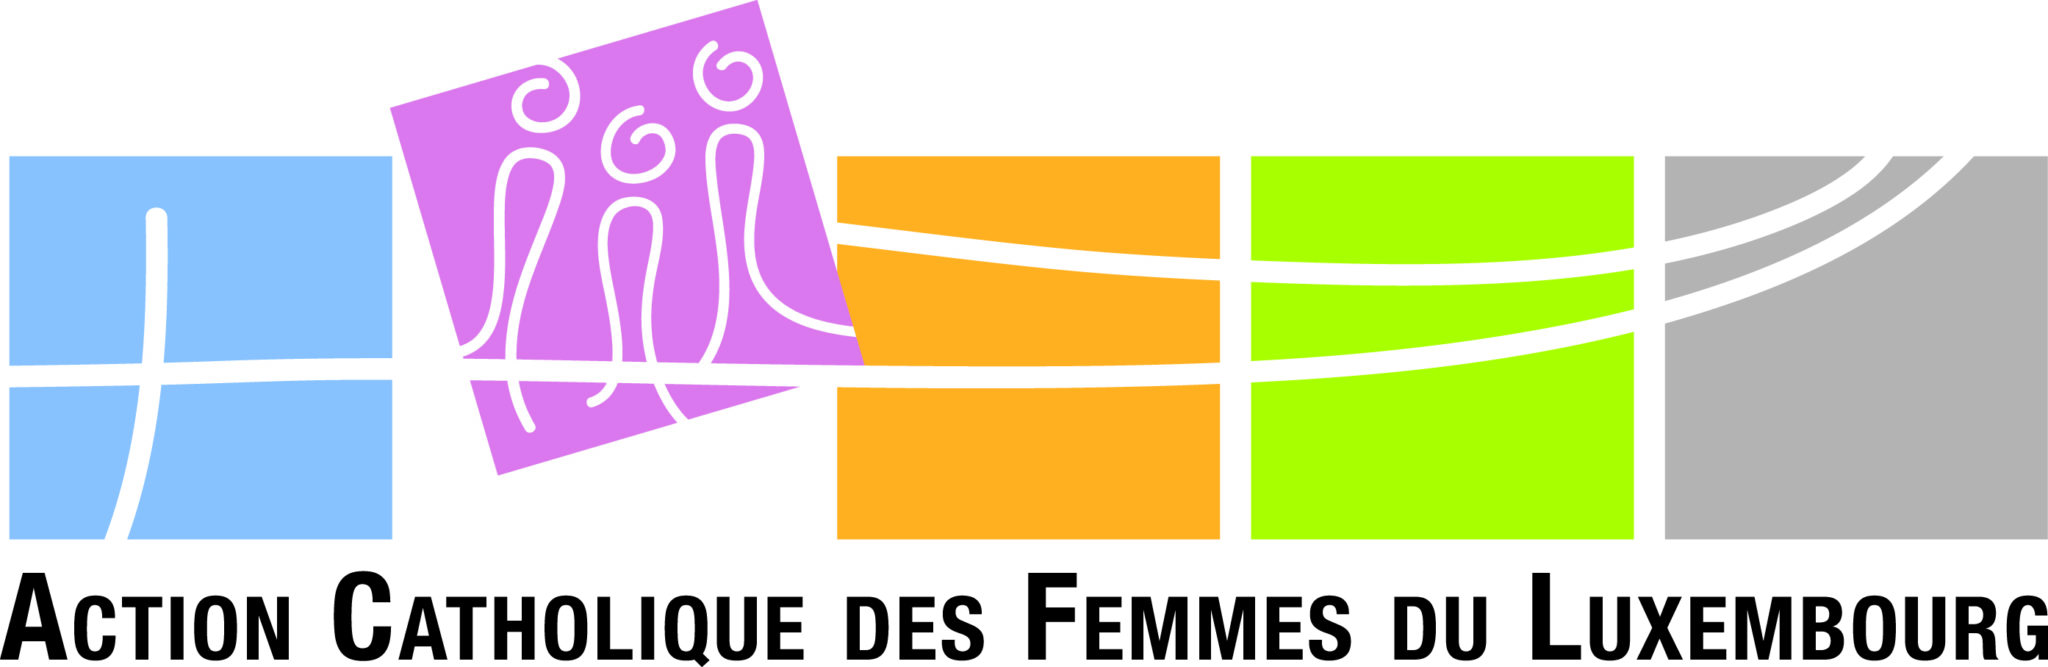 Action Catholique des Femmes du Luxembourg